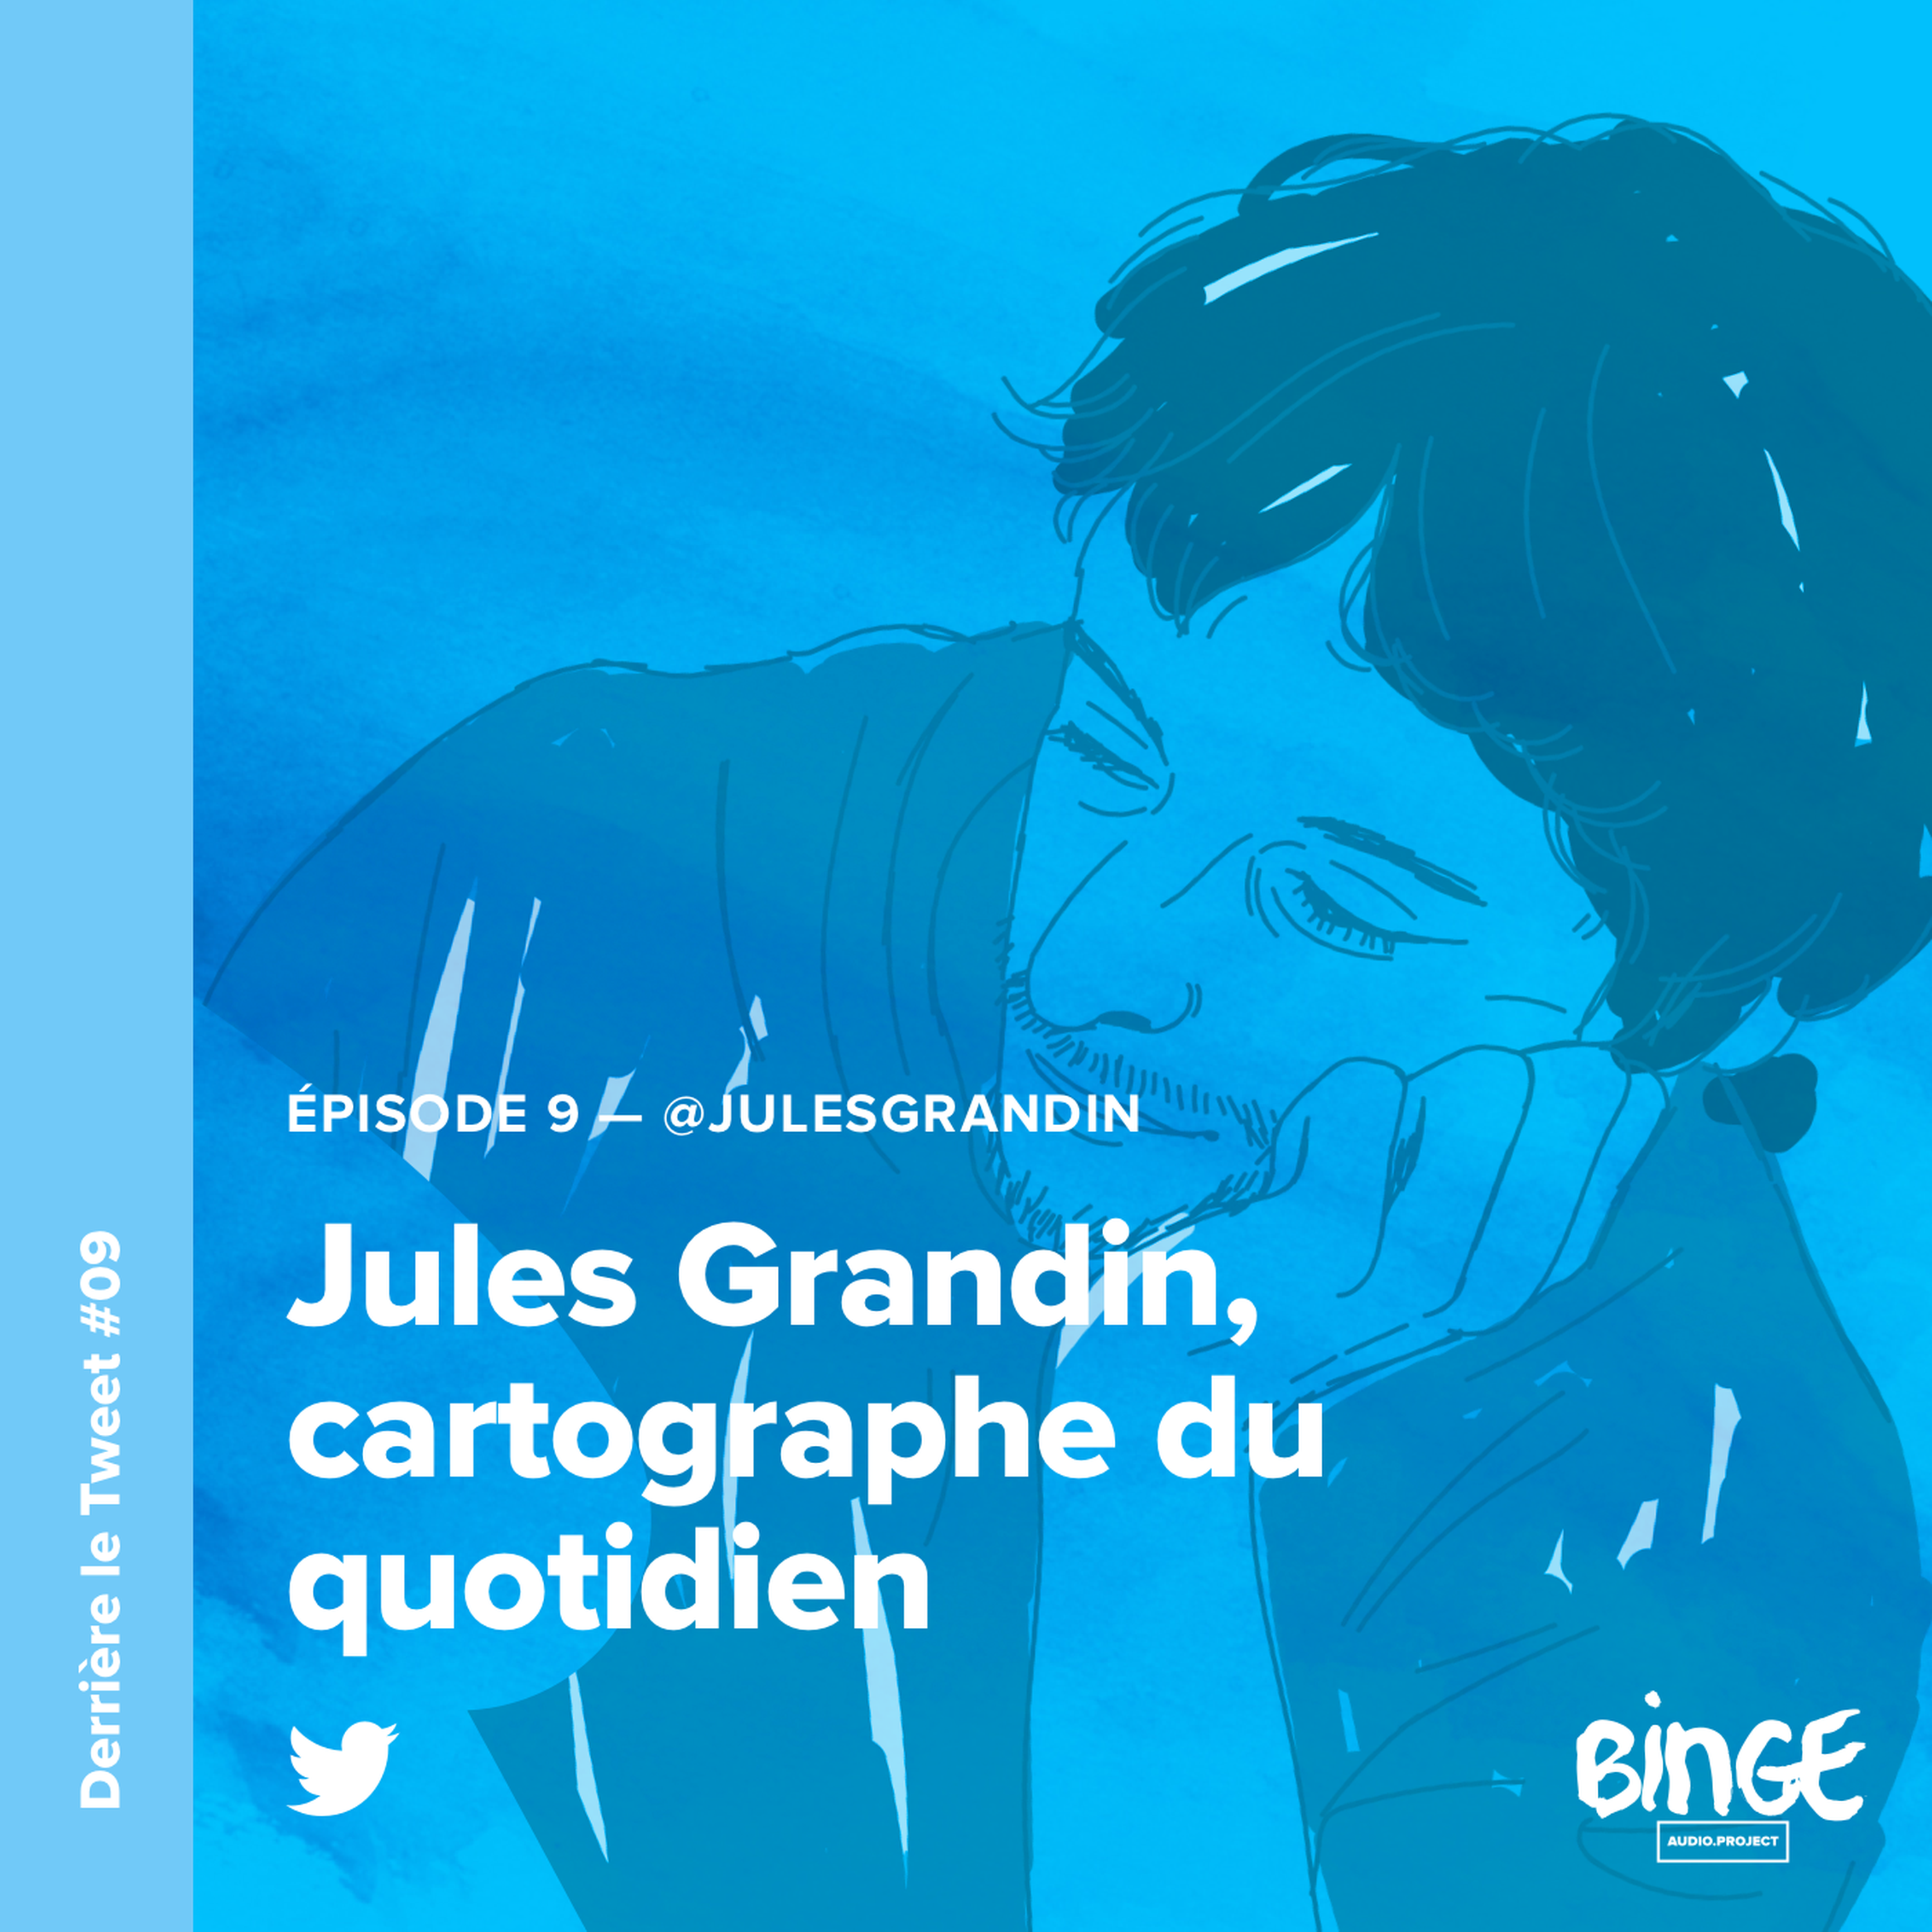 Jules Grandin, cartographe du quotidien